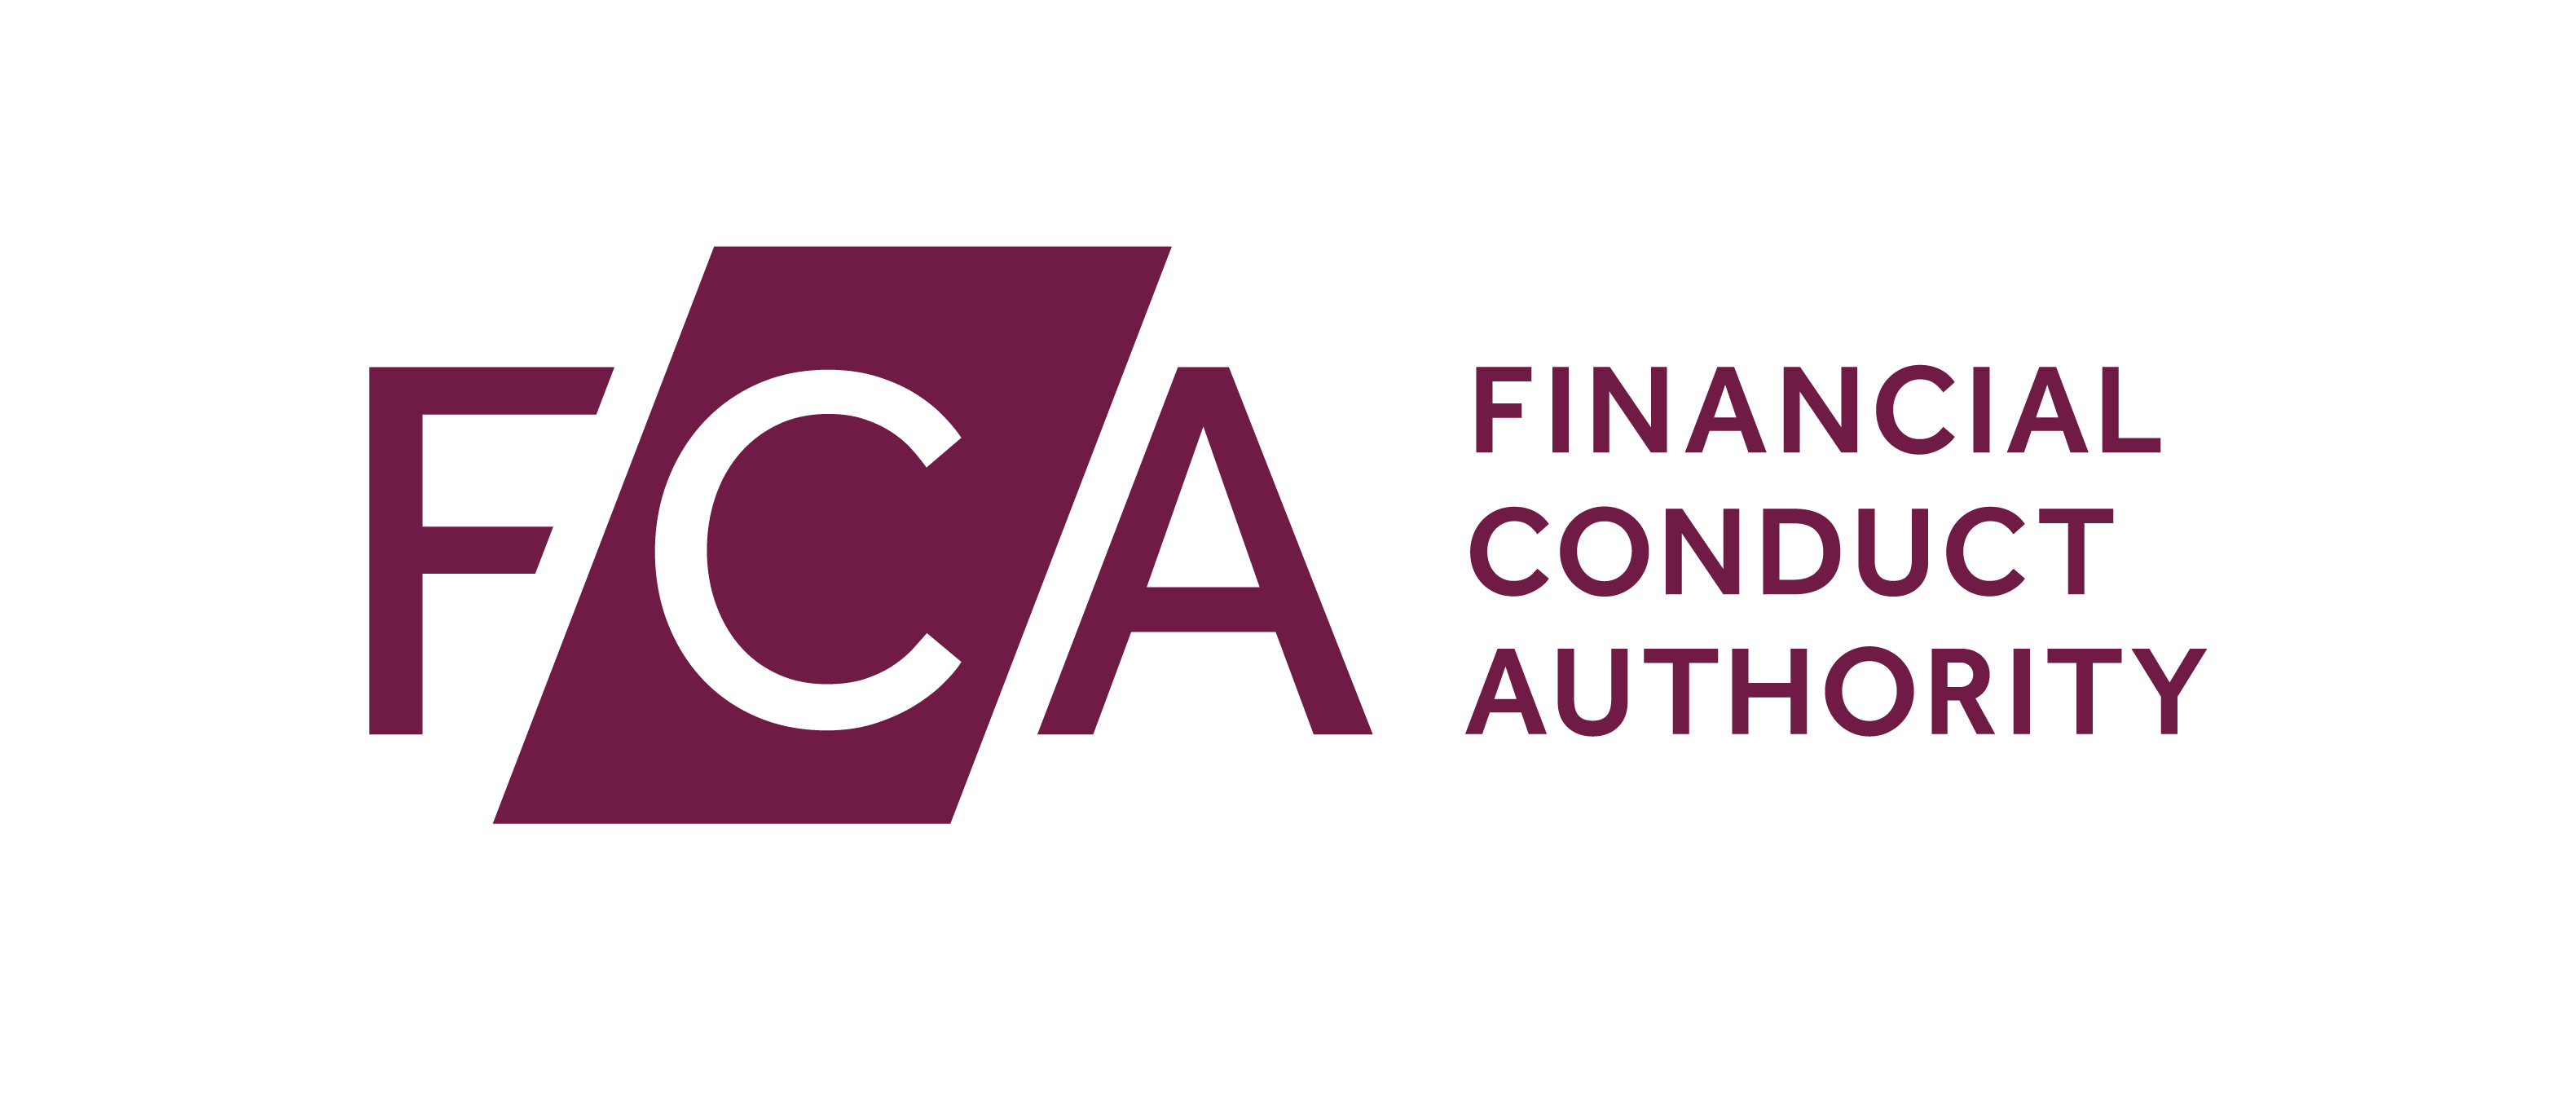 Financial conduct Authority. FCA. Управление по финансовому регулированию и надзору Великобритании. FCA logo. Вб е